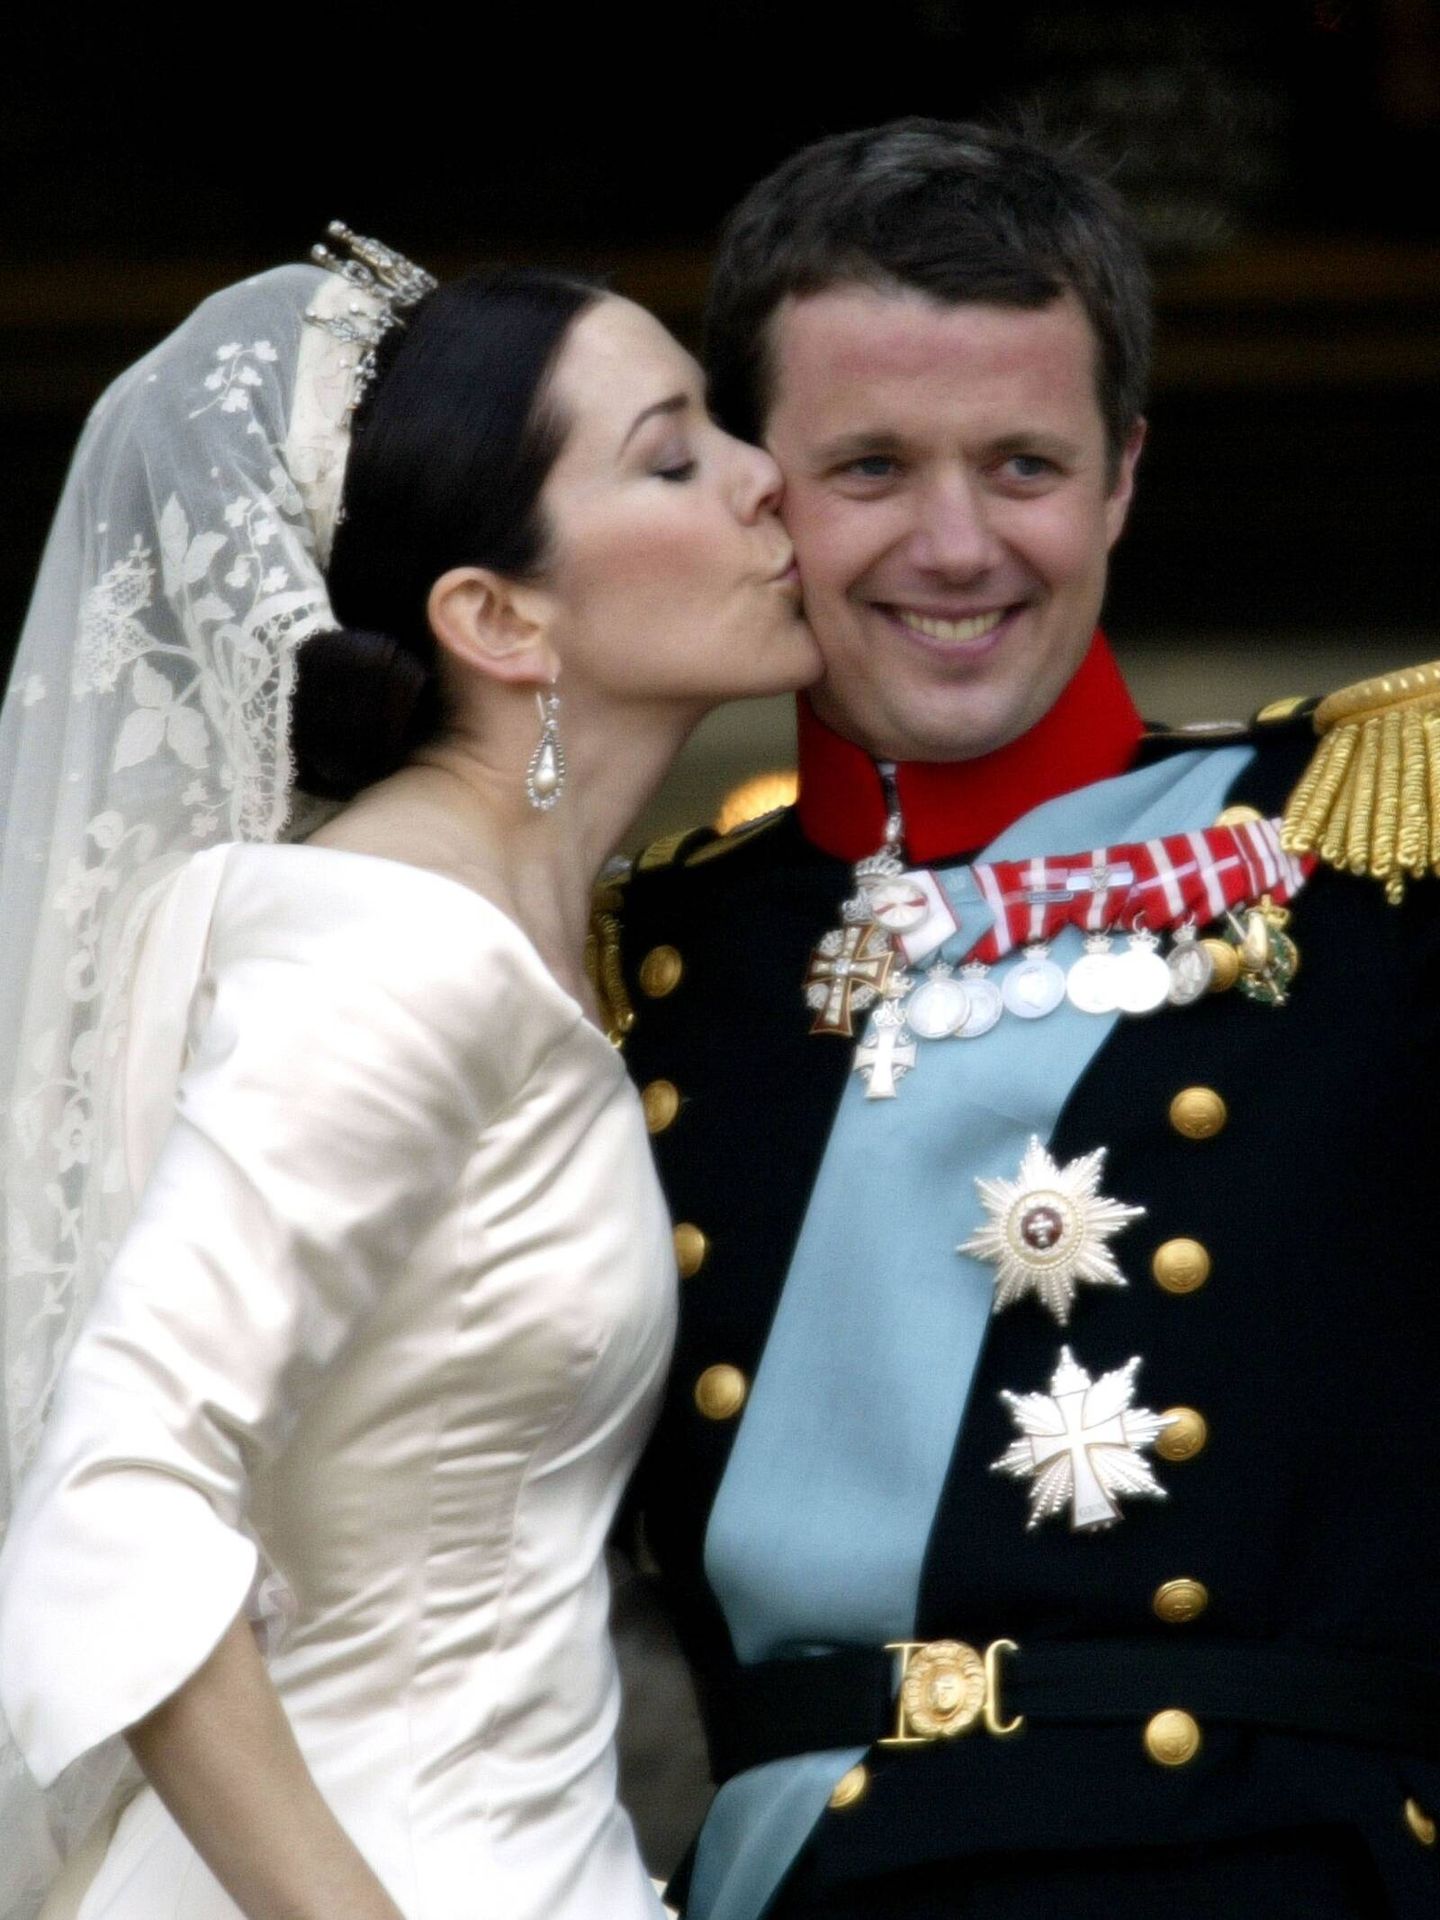 La boda de Mary y Federico en 2004. (Getty)